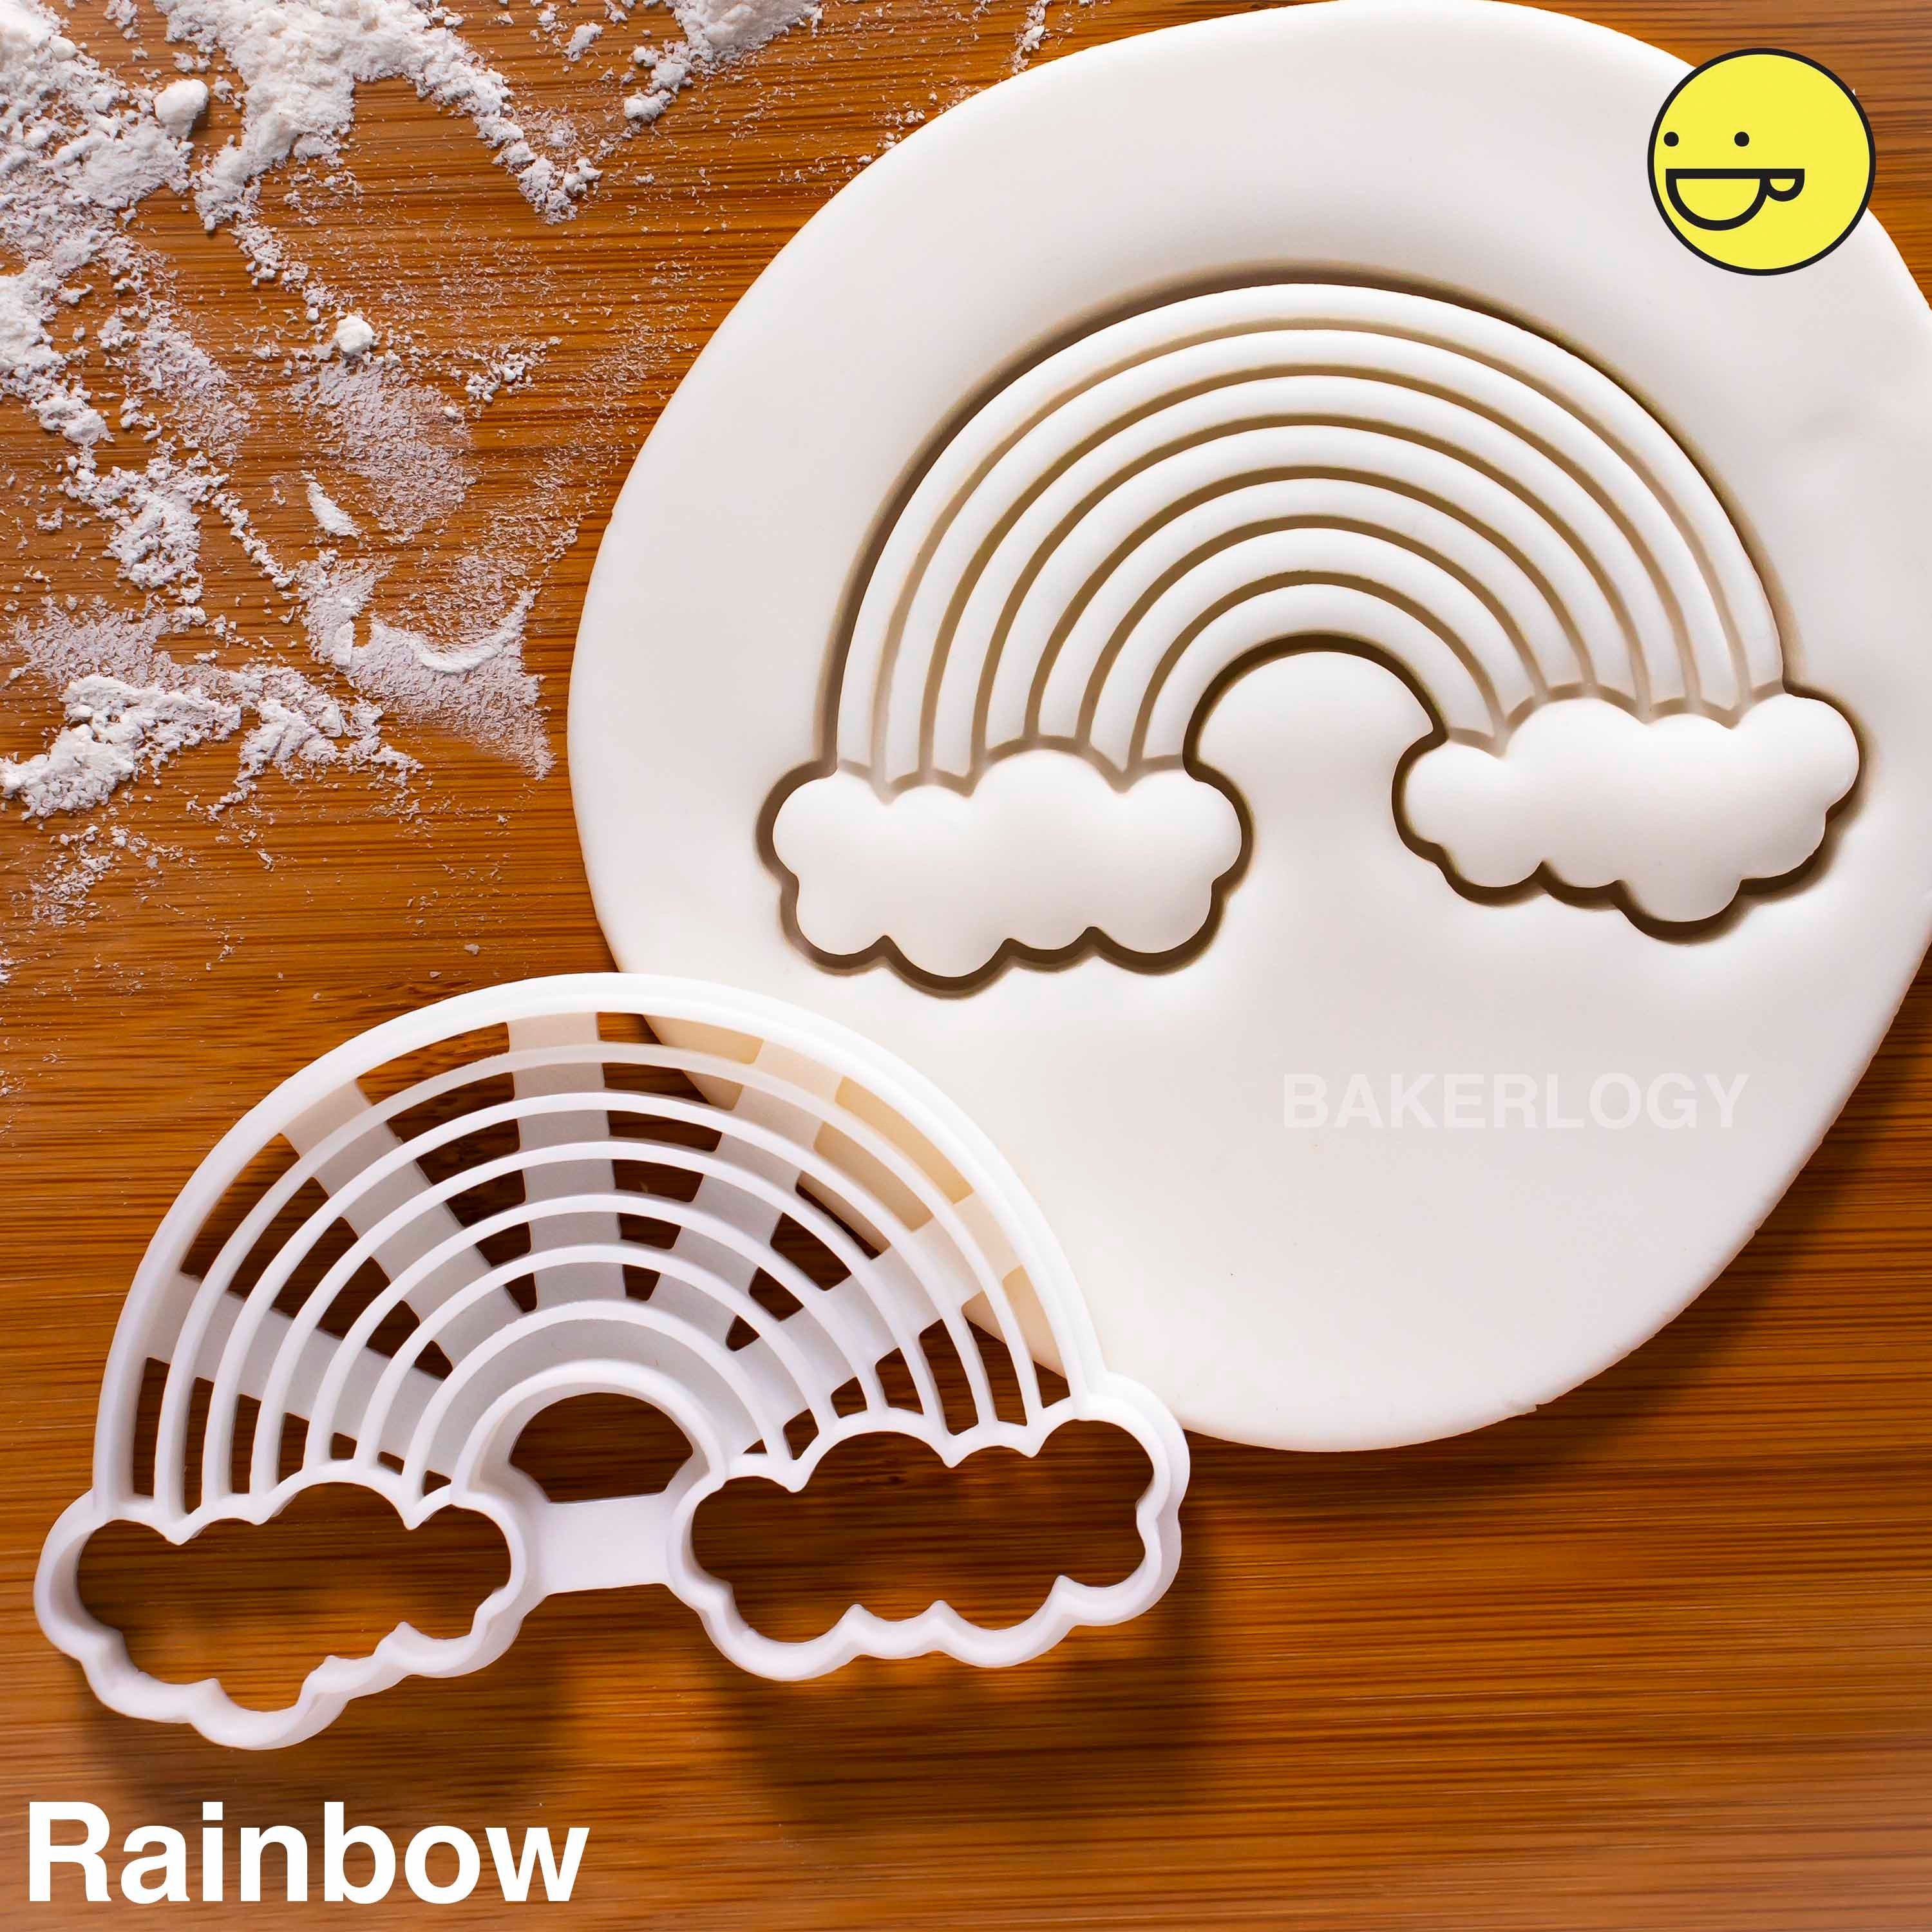 4 Cloud Metal Cookie Cutter